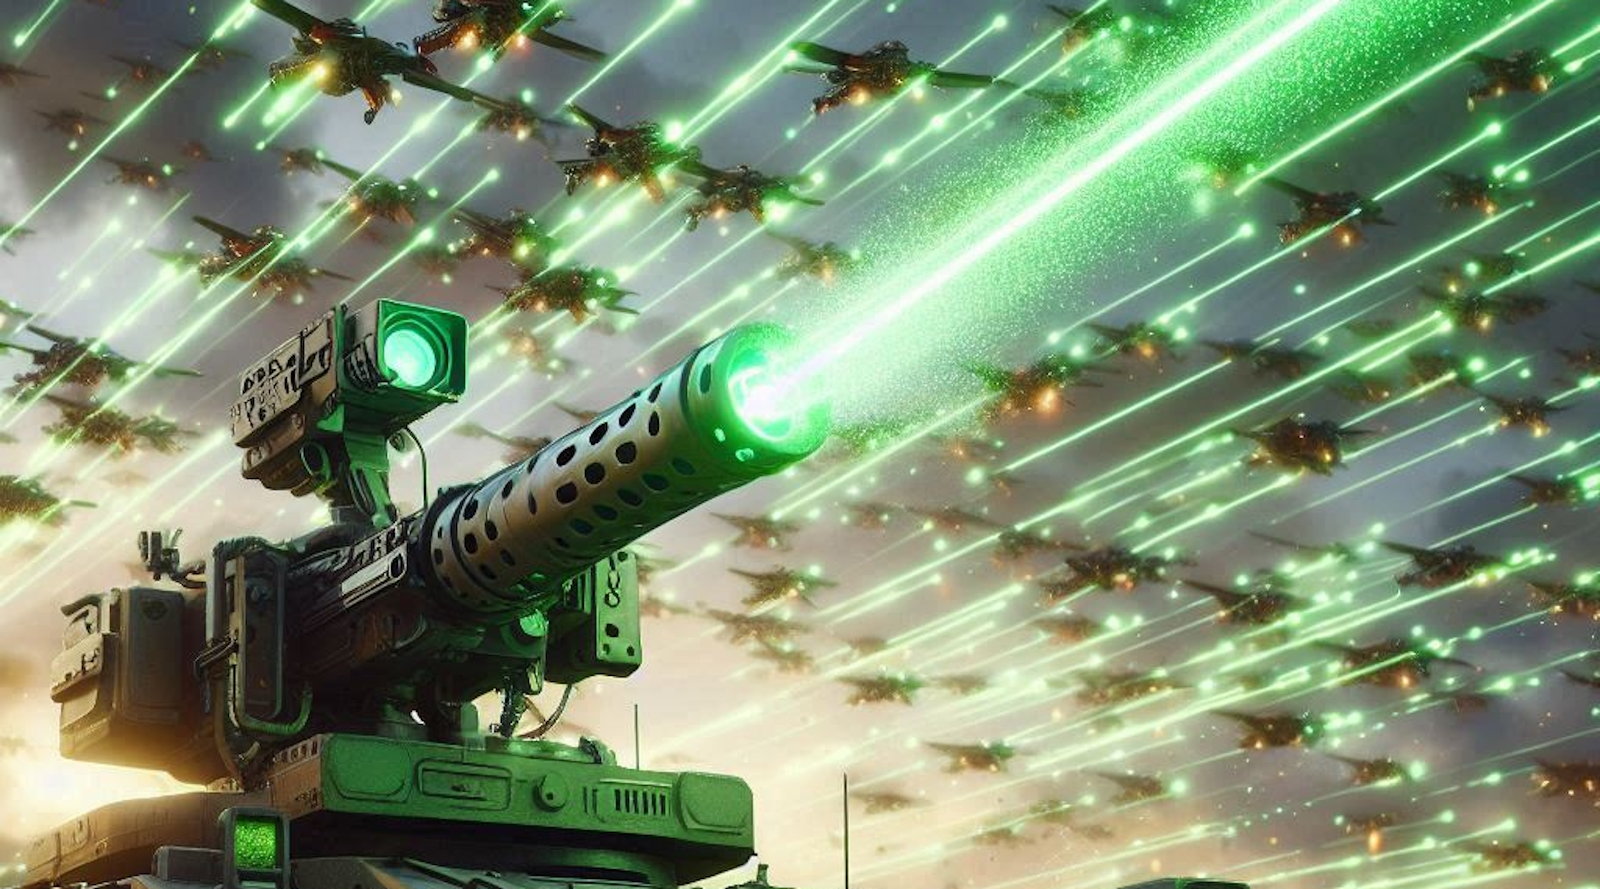 Le tir d’un canon laser coûte un peu plus d’un euro et est illimité. © SB, Microsoft Designer (image générée avec IA)